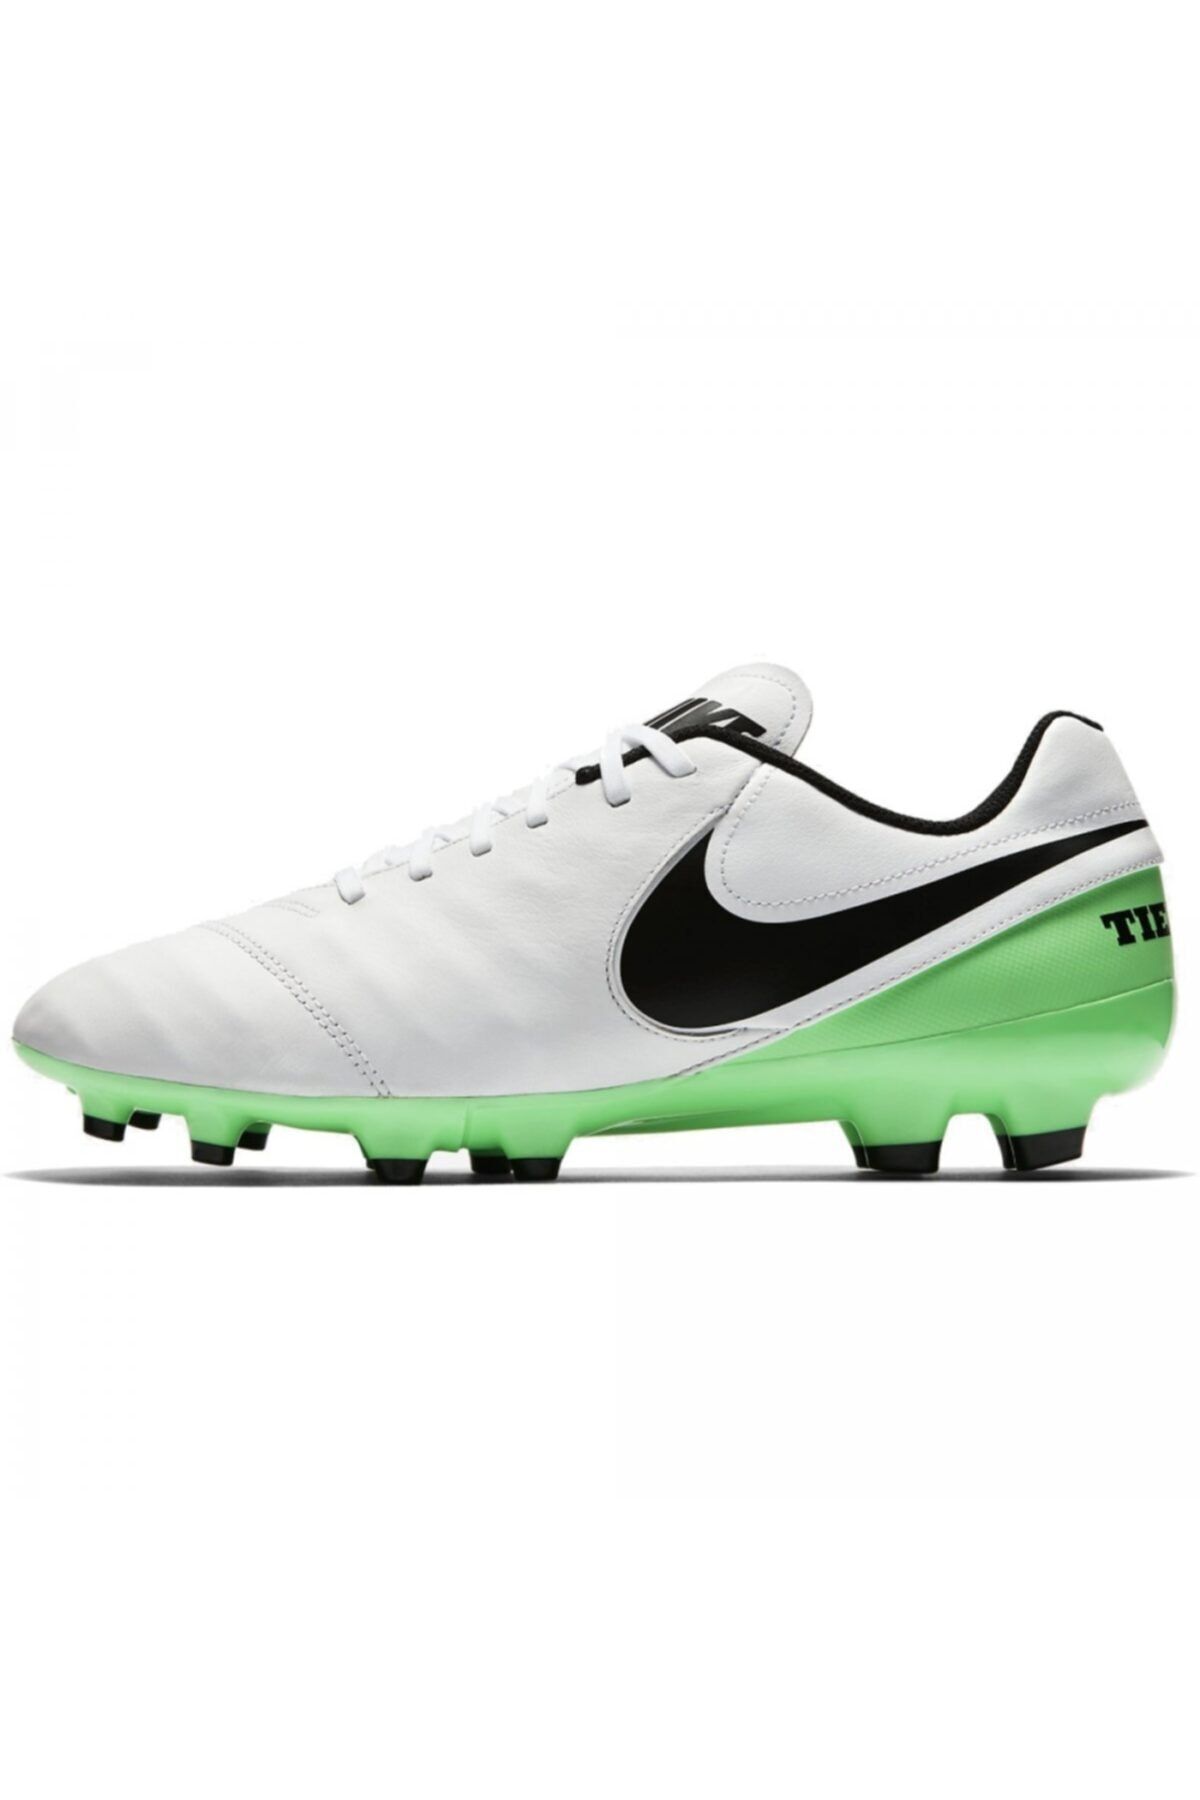 Nike 819213-103 Tıempo Genıo Erkek Futbol Ayakkabı